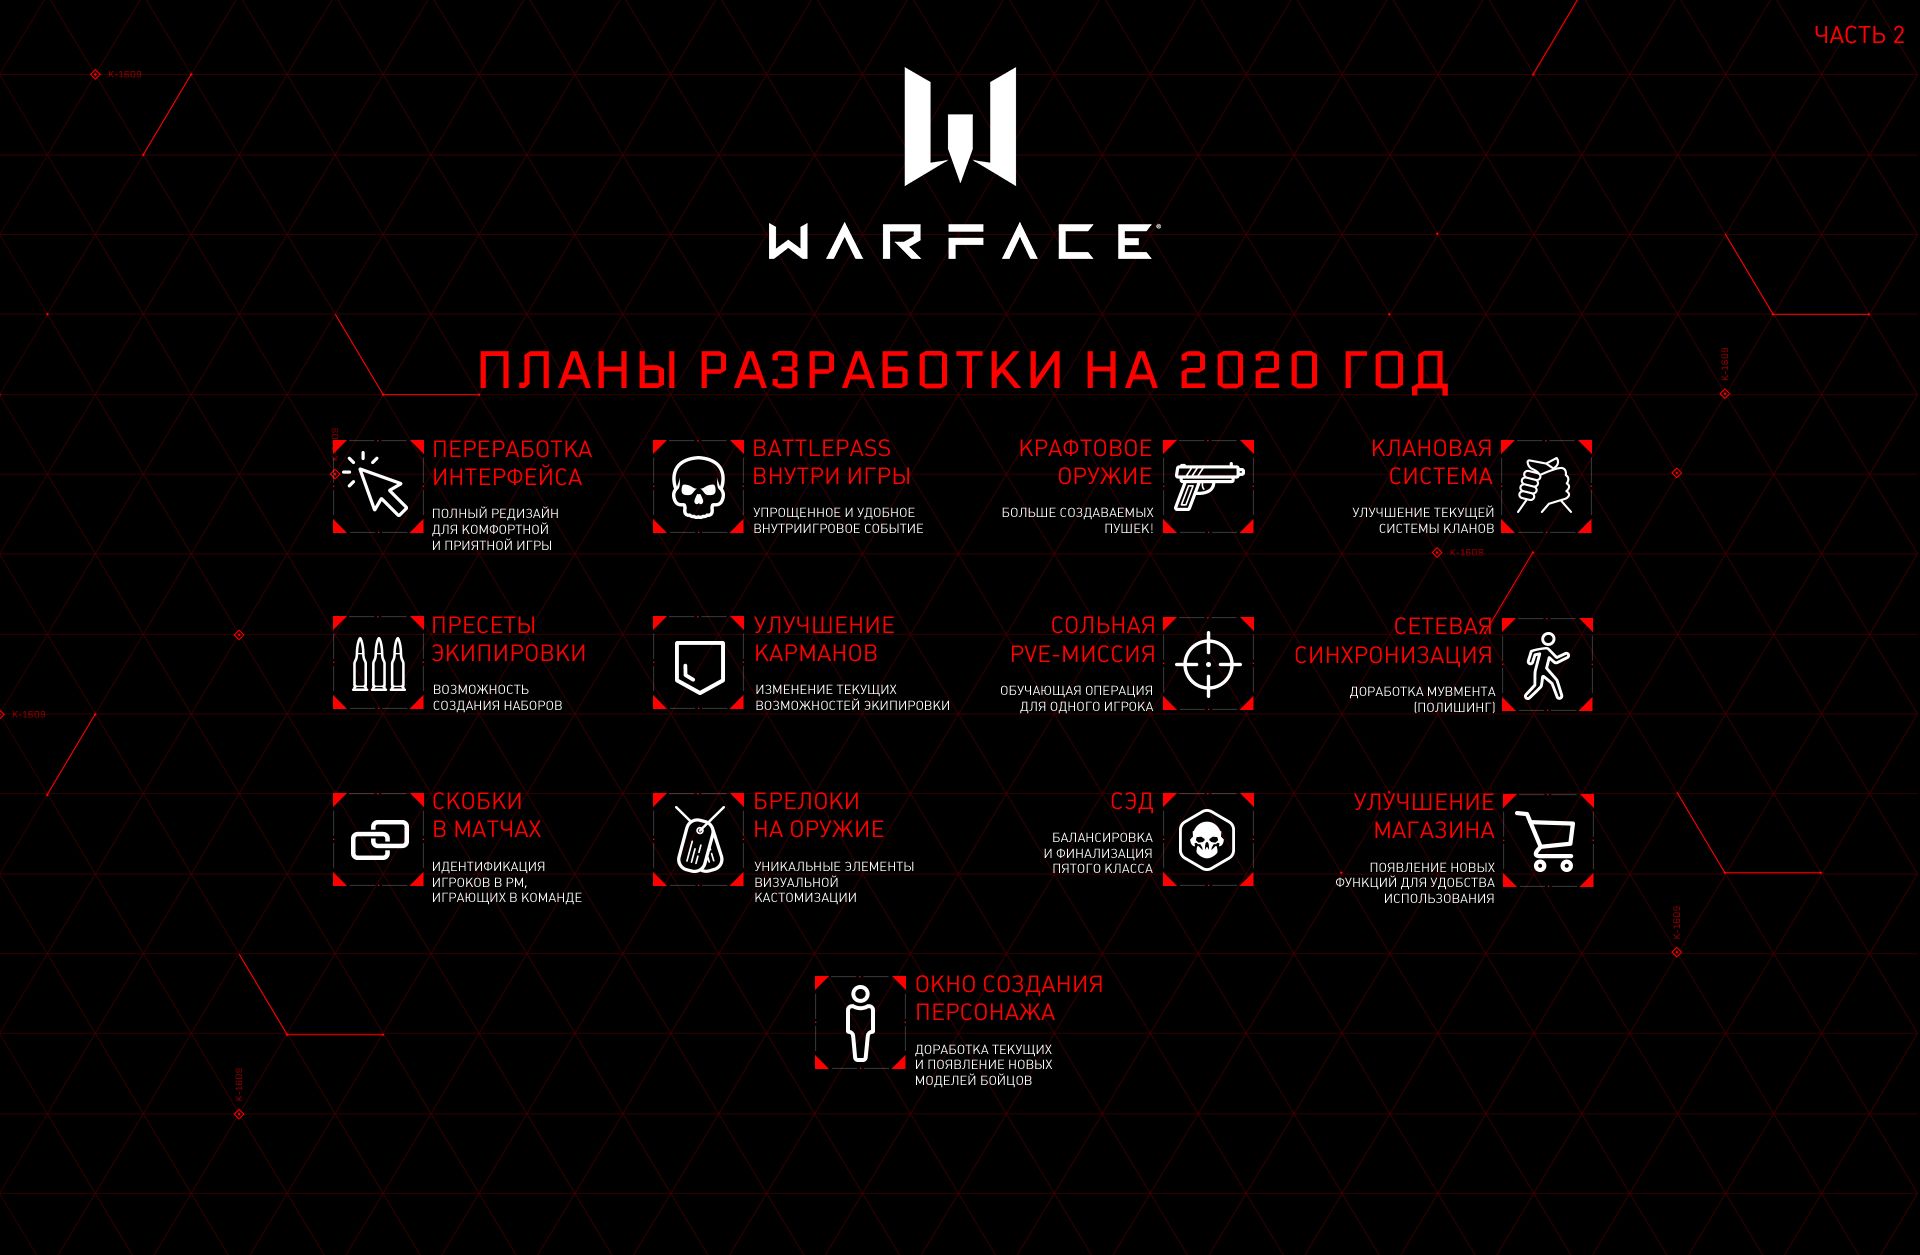 У разработчиков Warface амбициозные планы на 2020 год